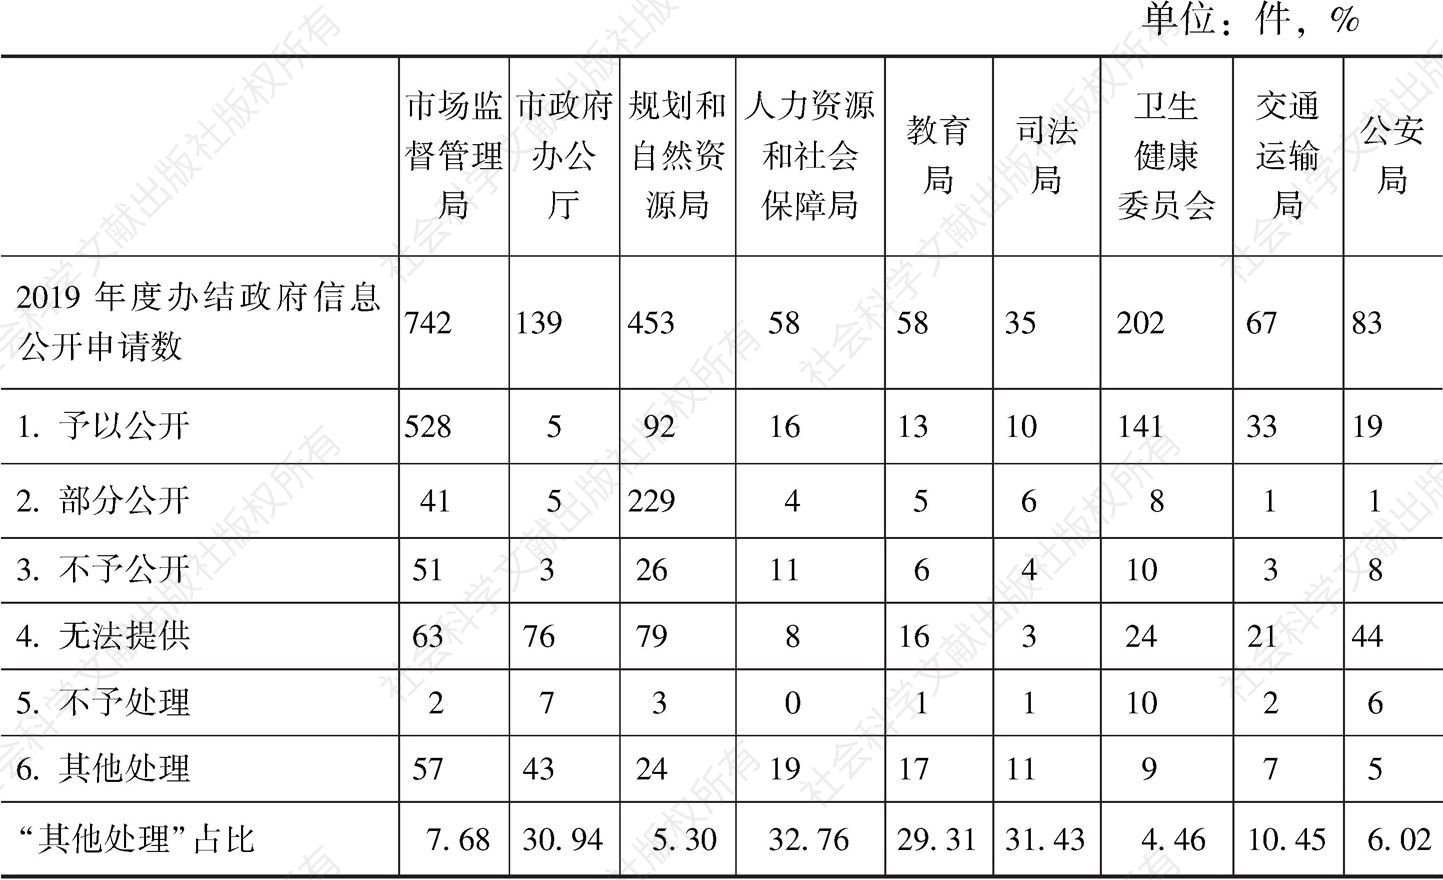 表3 2019年深圳市依申请公开案件以“其他处理”办结件数较多的政府部门情况